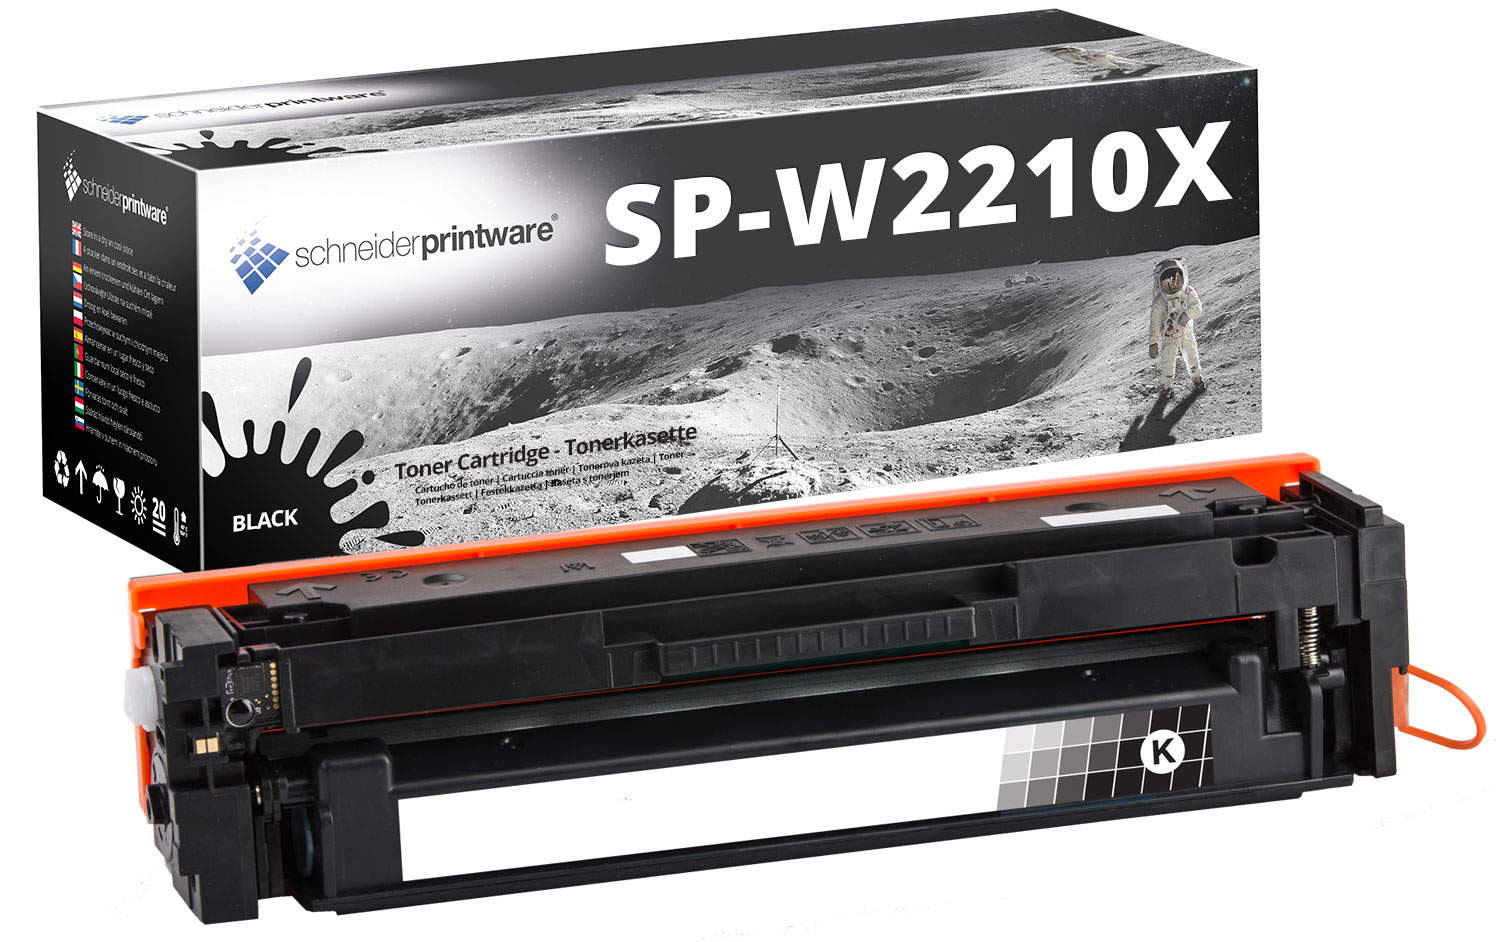 Schneiderprintware Toner ersetzt HP 207X W2210X SCHWARZ